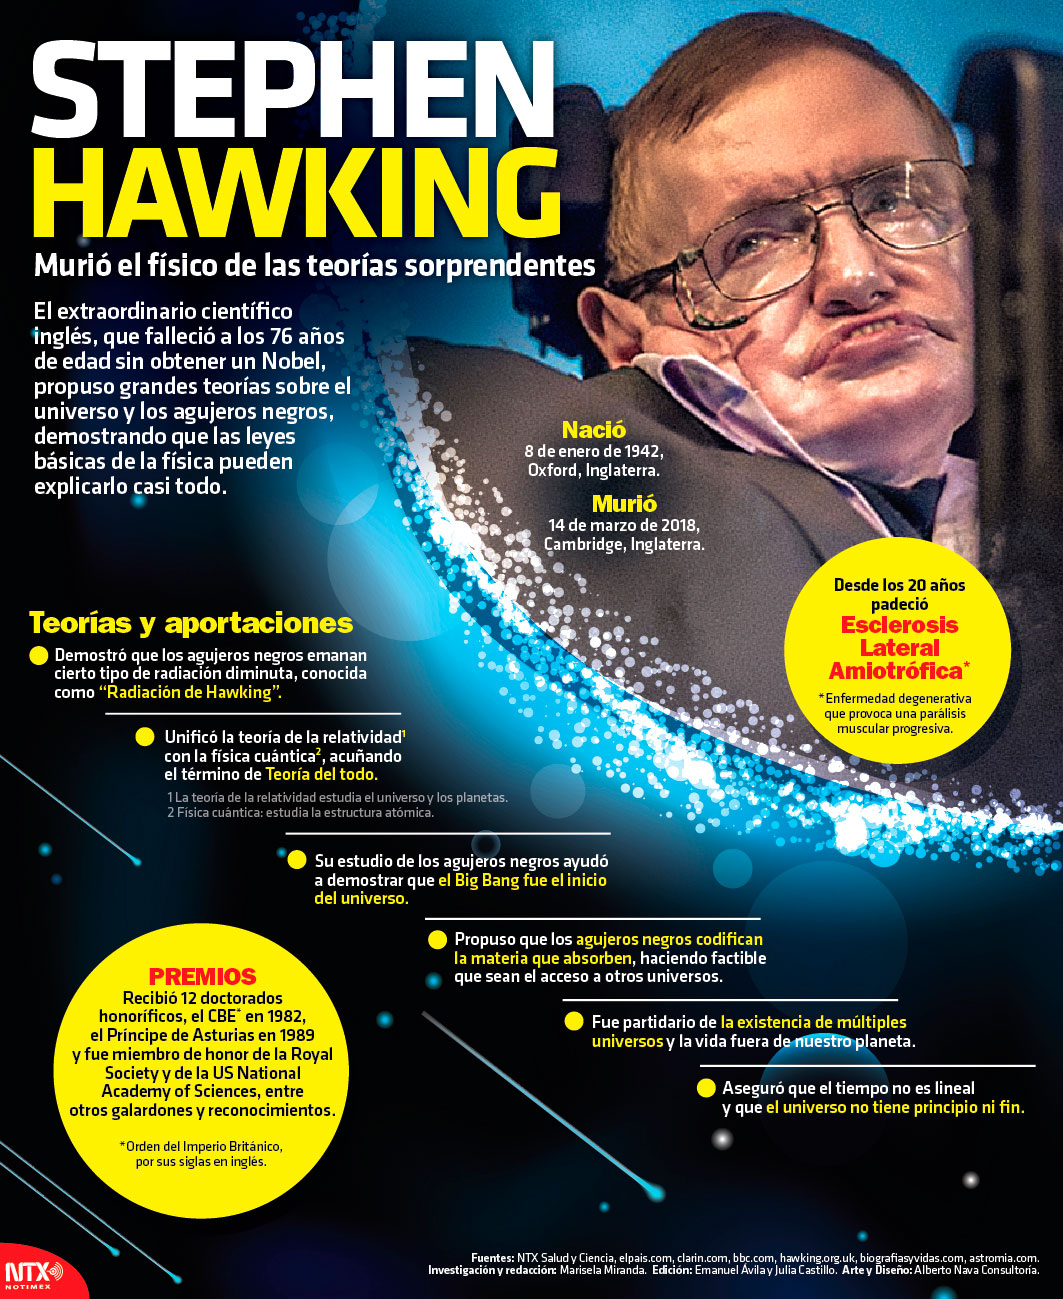 Stephen Hawking, muri el fsico de la teoras sorprendentes